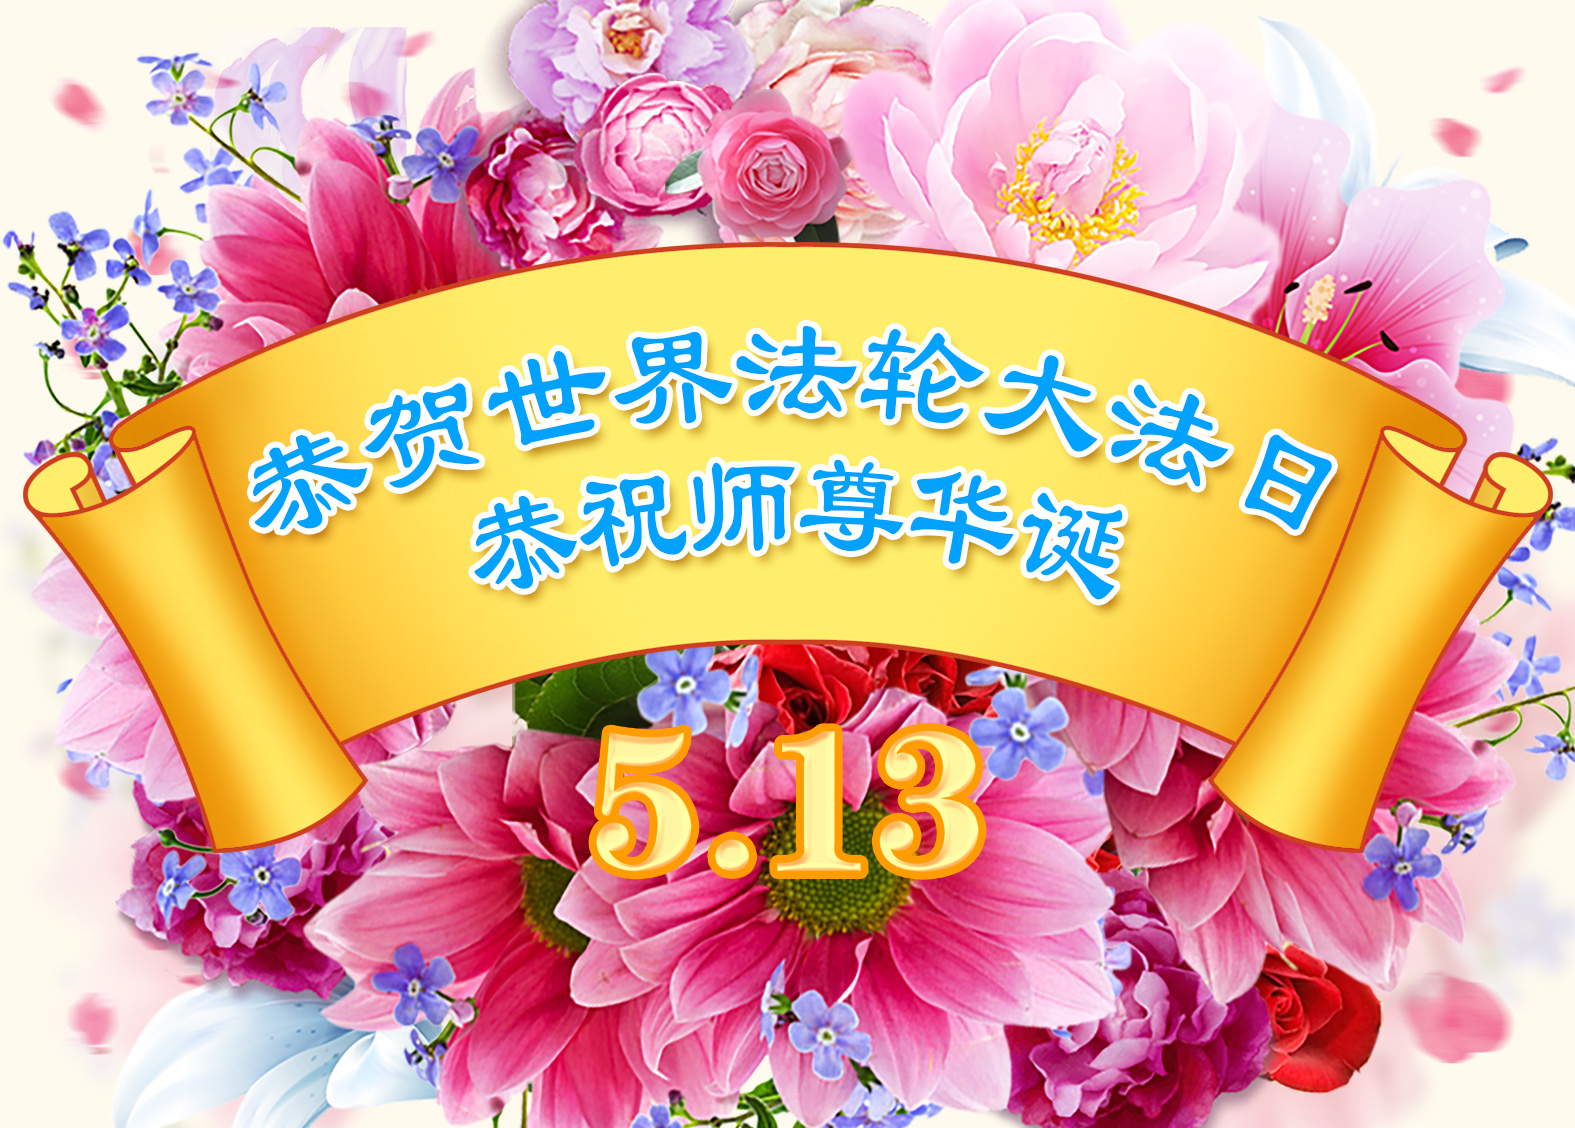 Image for article [Dünya Falun Dafa Günü Kutlaması] Genç Uygulayıcı: Okula Giderken Uygulama Yapmak